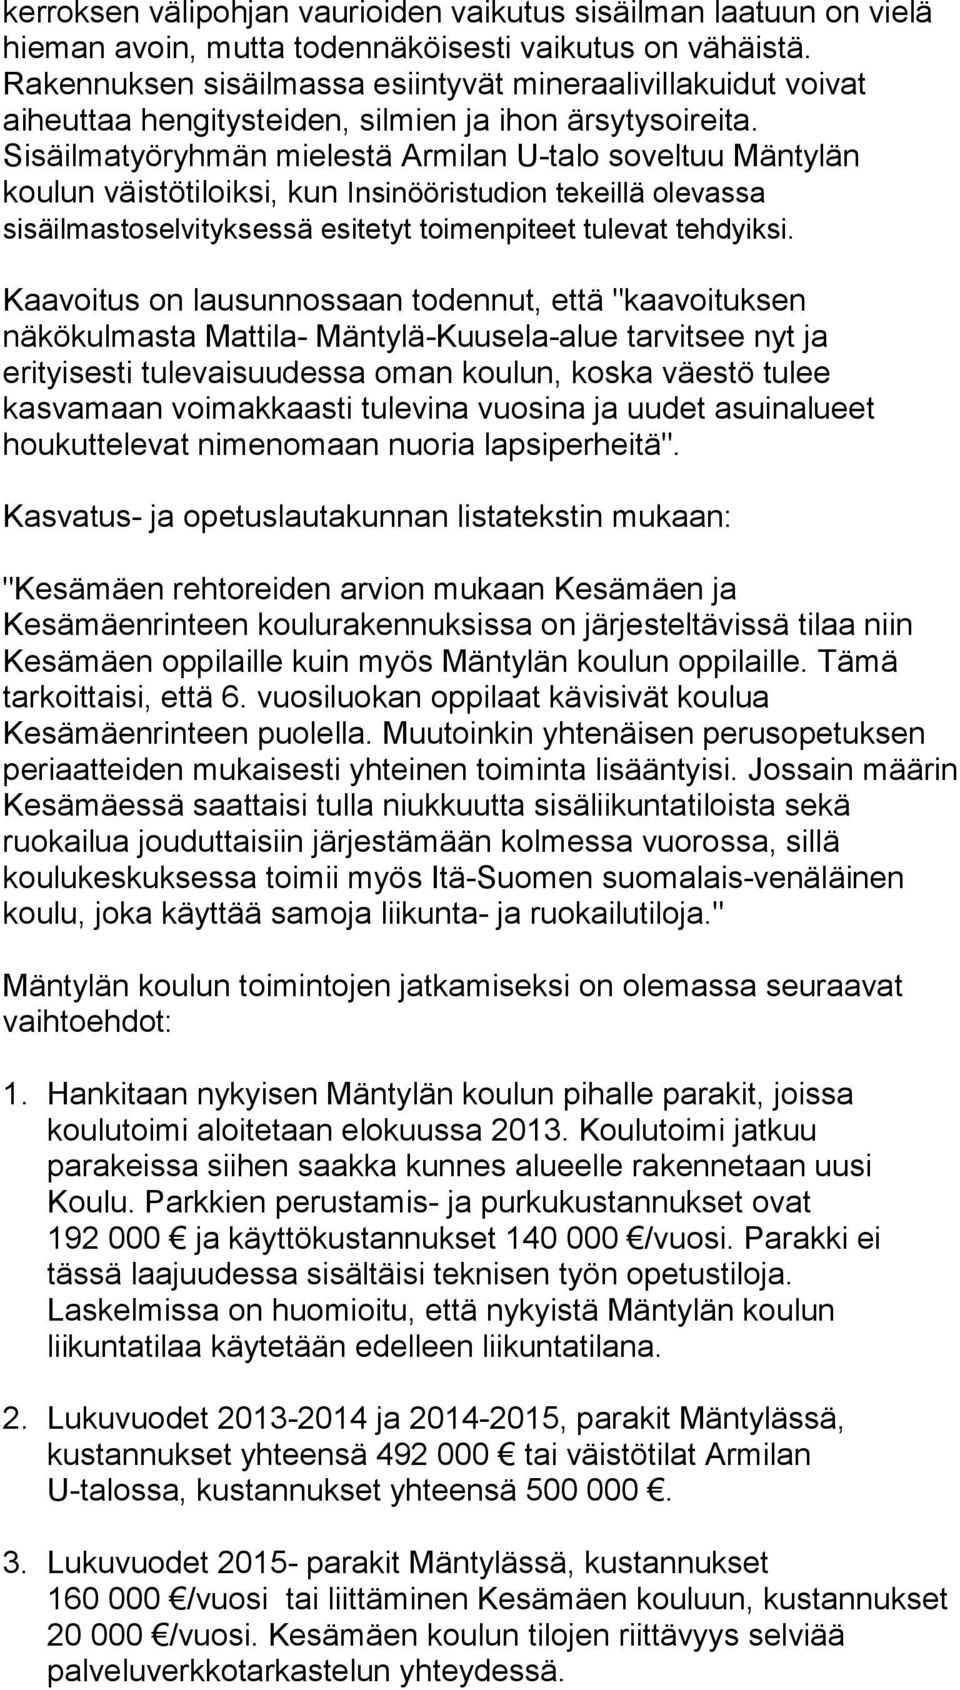 Sisäilmatyöryhmän mielestä Armilan U-talo soveltuu Mäntylän koulun väistötiloiksi, kun Insinööristudion tekeillä olevassa sisäilmastoselvityksessä esitetyt toimenpiteet tulevat tehdyiksi.